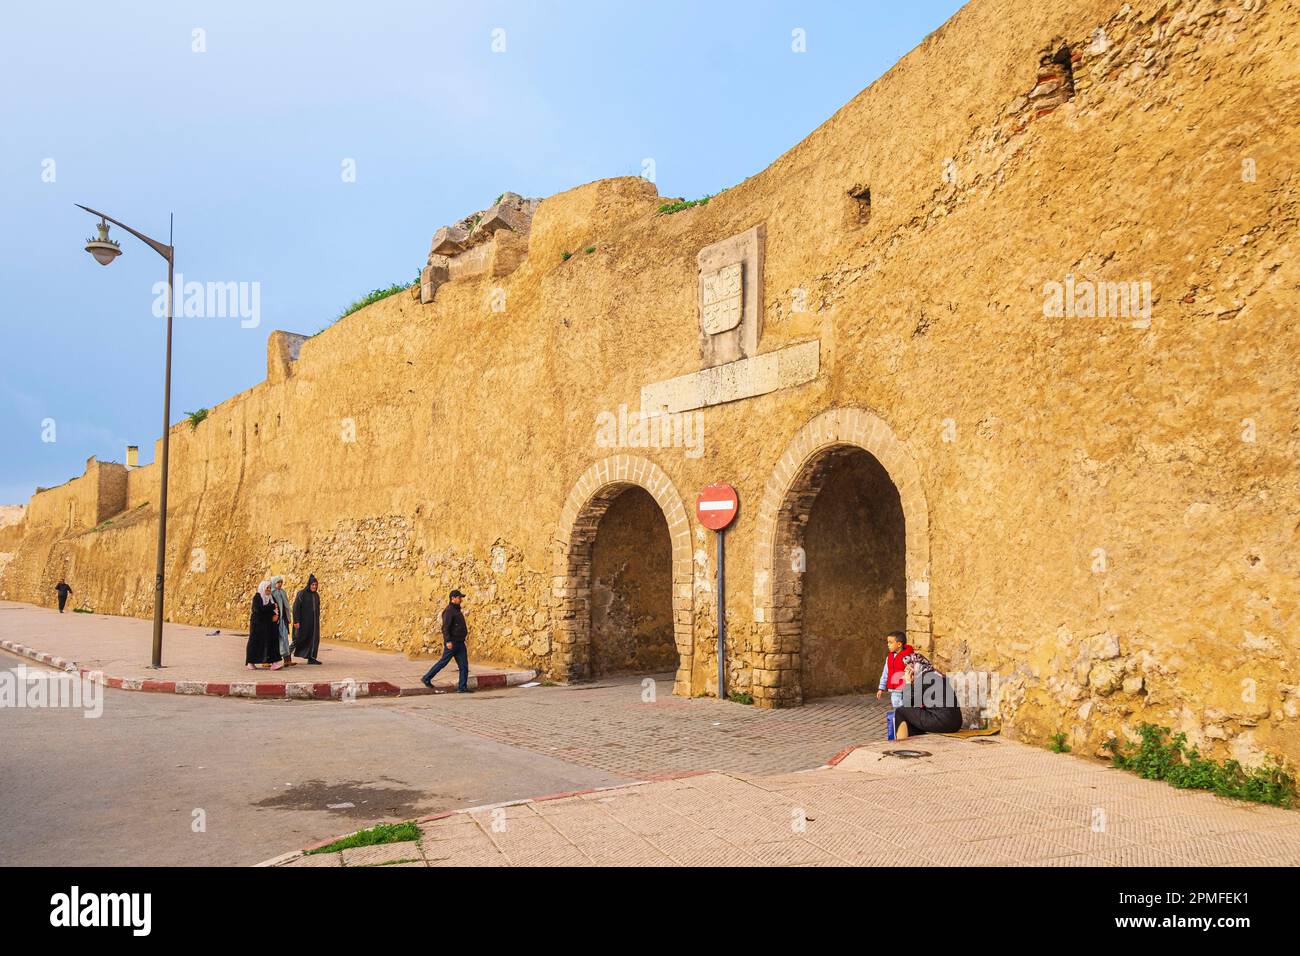 Maroc, El Jadida, la ville fortifiée portugaise de Mazagan classée au patrimoine mondial de l'UNESCO, construite par les Portugais au début du 16th siècle, les remparts de la citadelle Banque D'Images